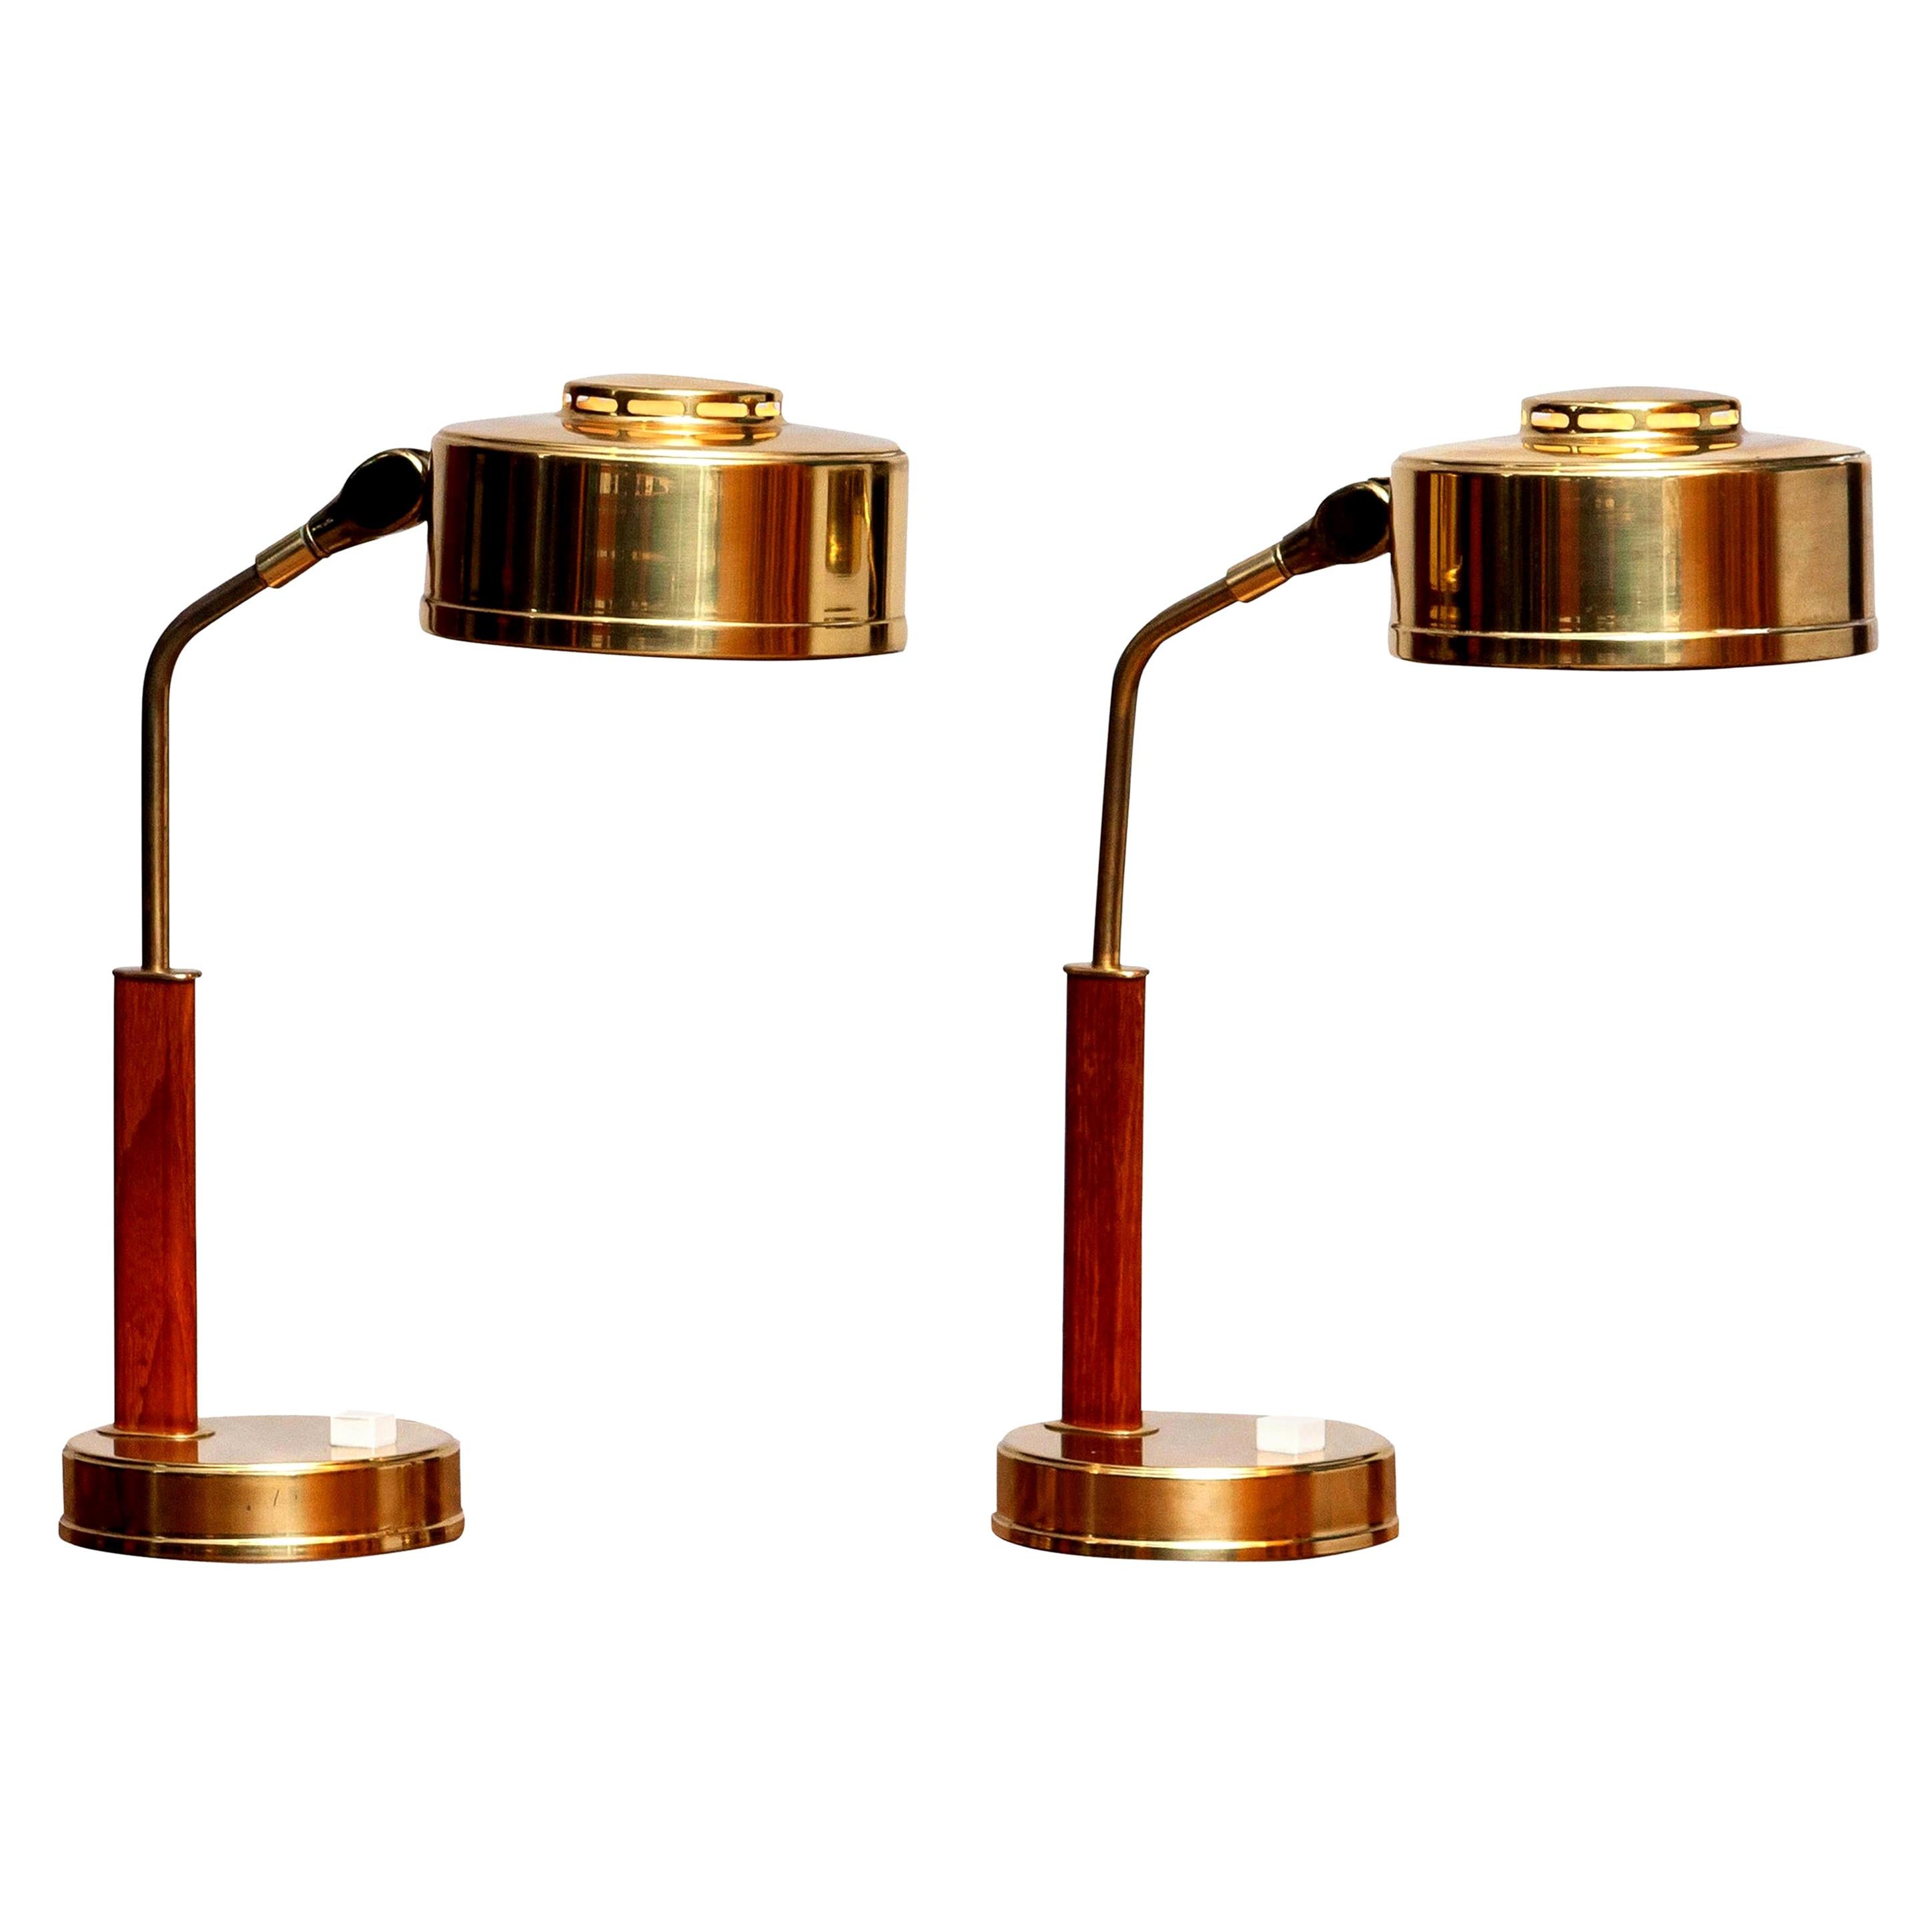 1960s, Pair of Brass and Teak Table or Desk Lamps by BJS Skellefteå, Sweden